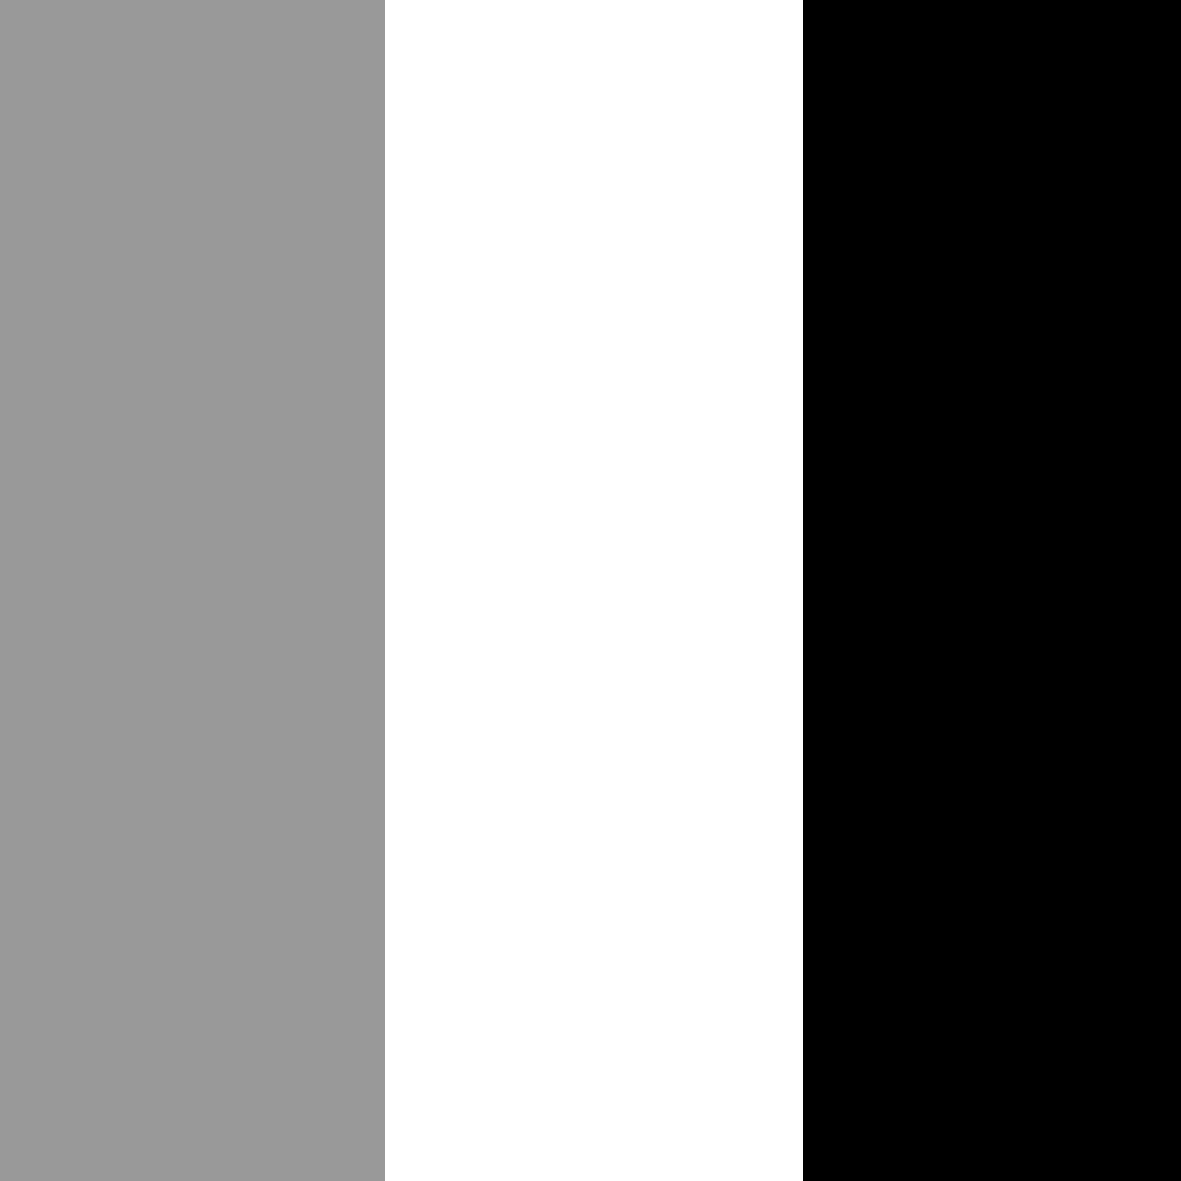 серый/белый/черный_999999/FFFFFF/000000